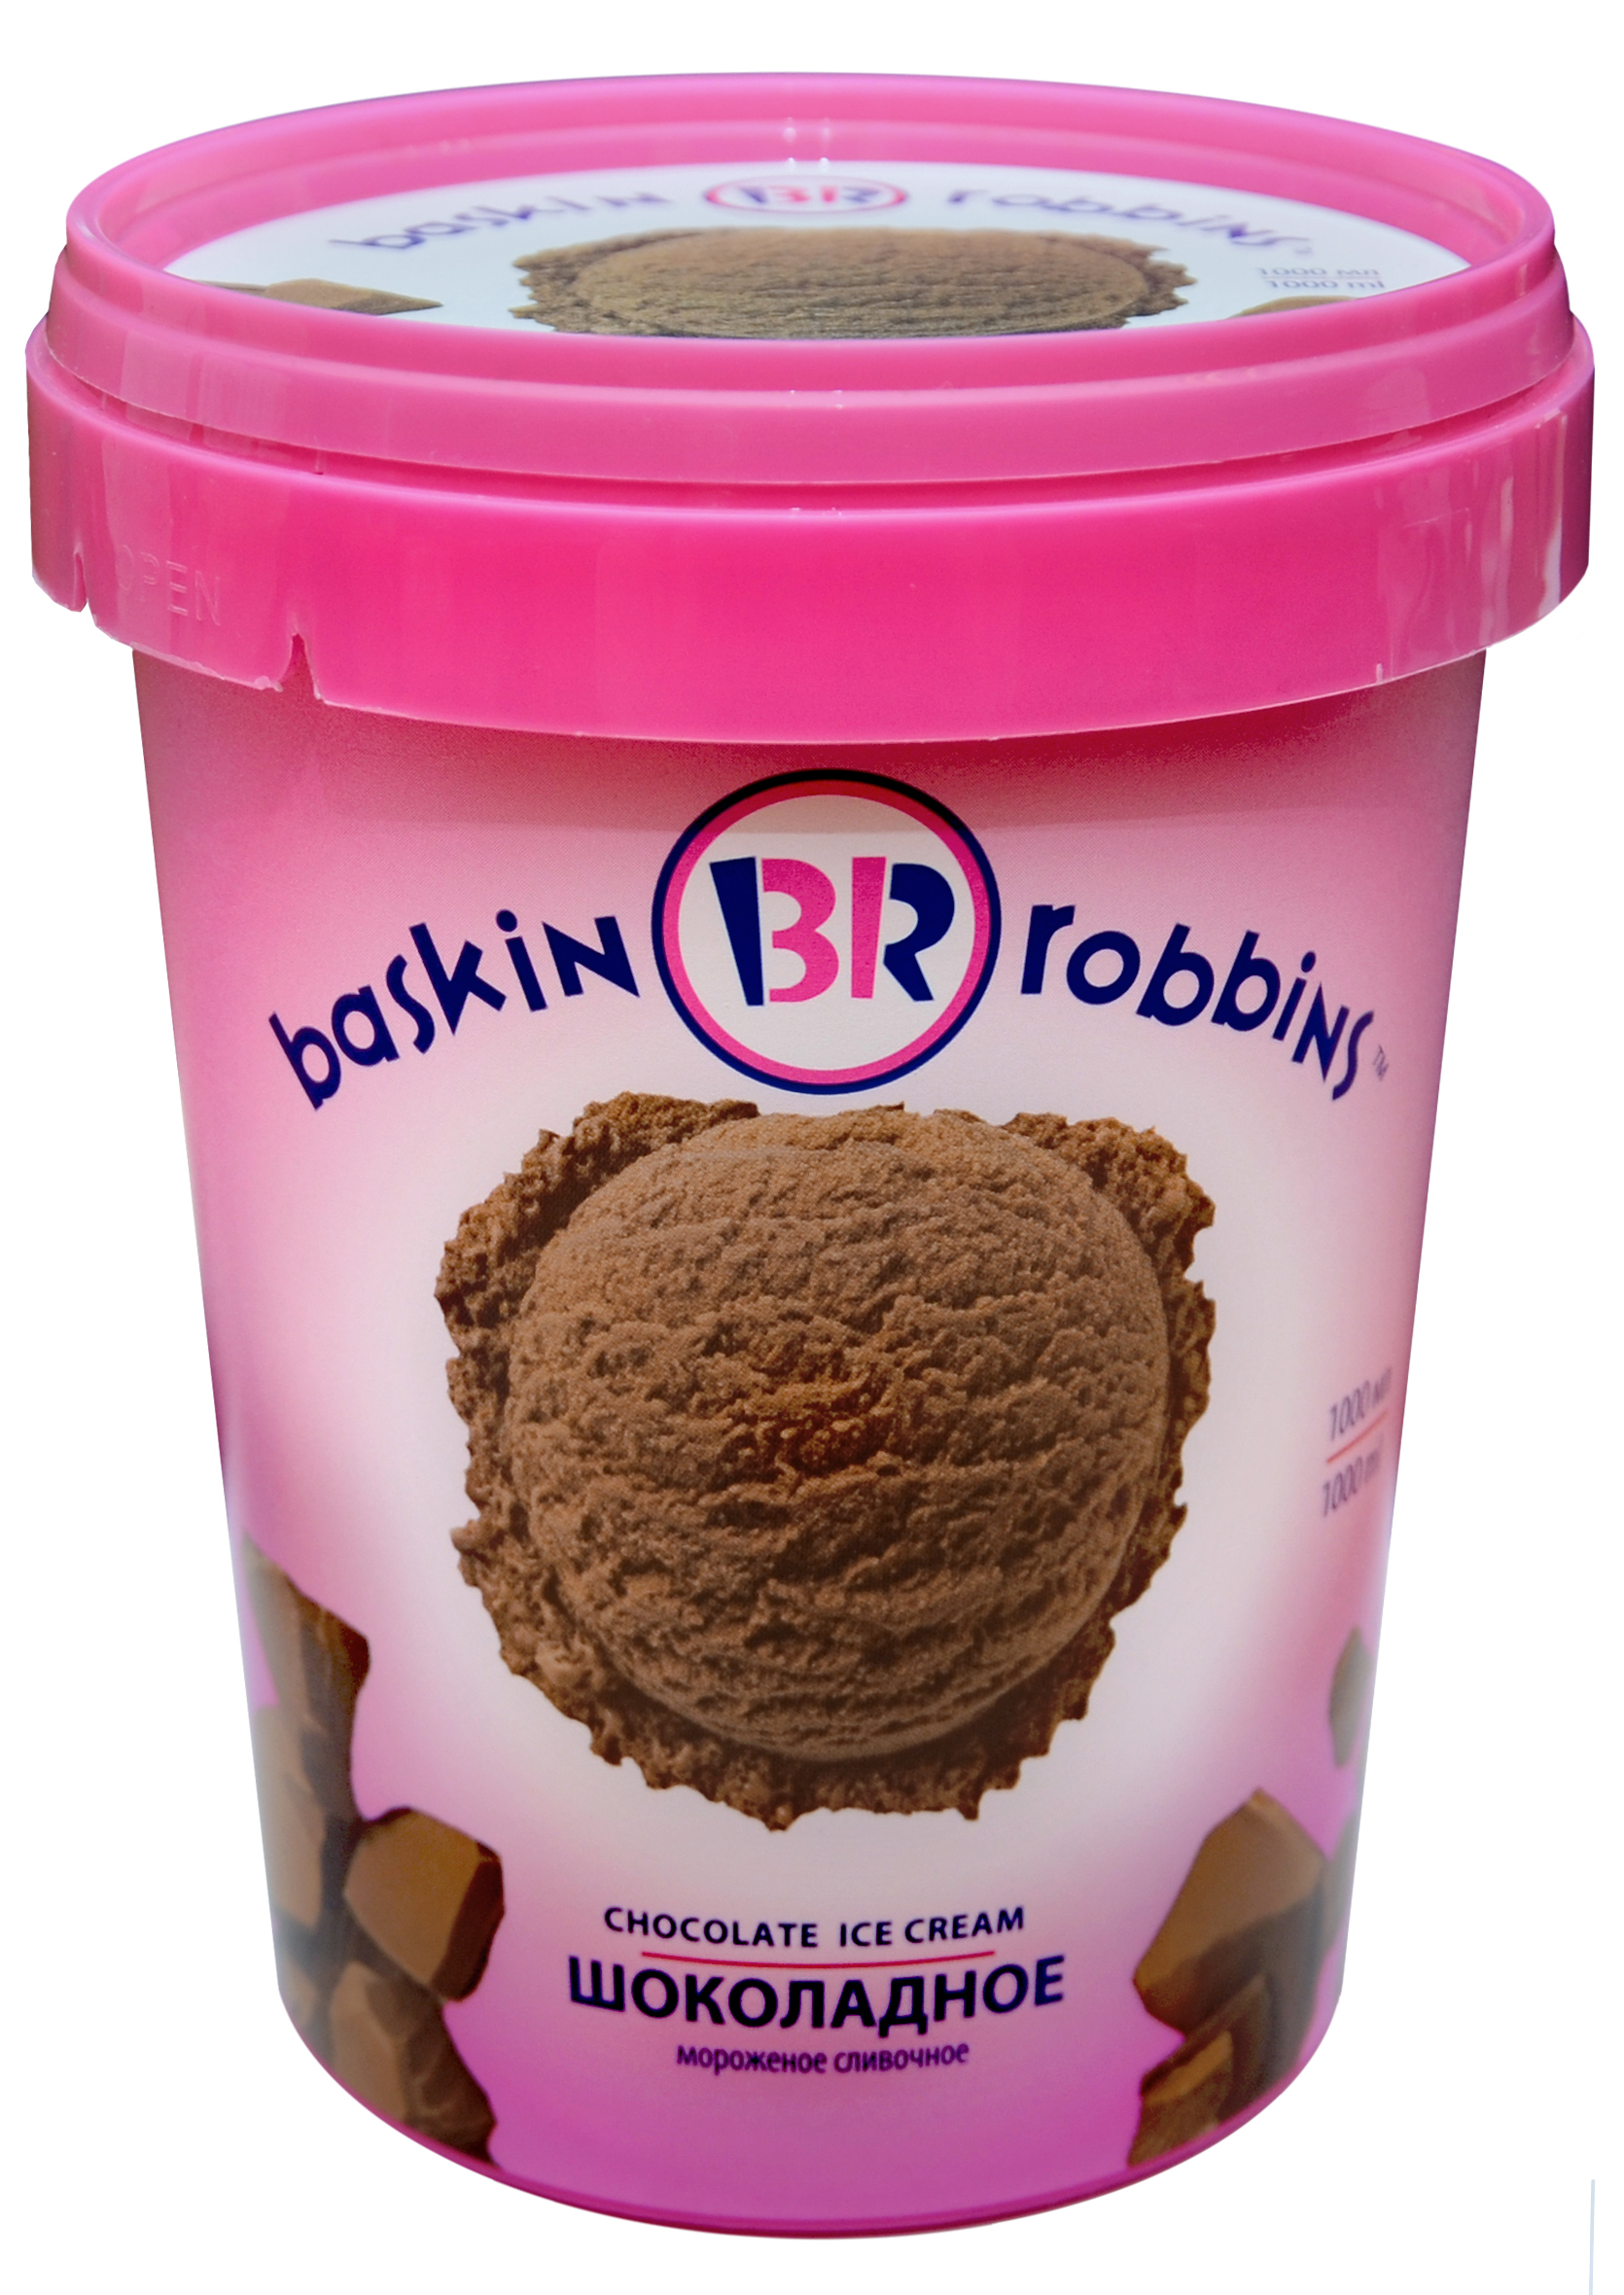 Мороженое купить 20 рублей. Баскин Роббинс шоколадное 1000 мл. Баскин Роббинс 600г. Мороженое Баскин Роббинс шоколадное 1000мл. Мороженое baskin Robbins шоколадное 1000 мл.